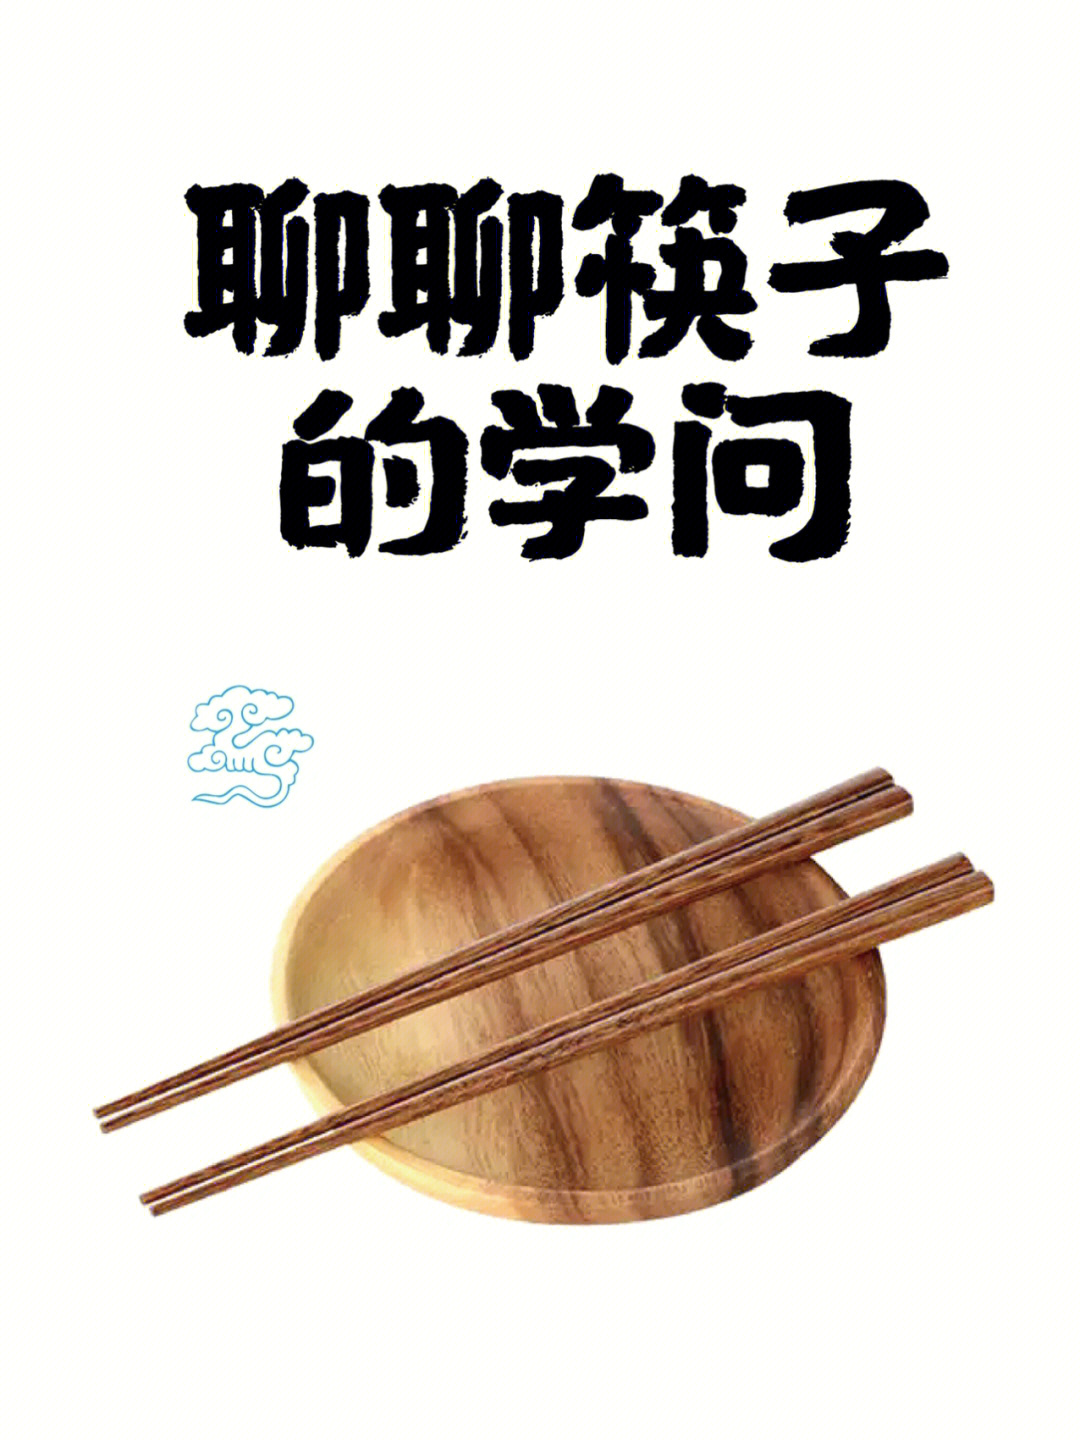 筷子的发散思维联想图片